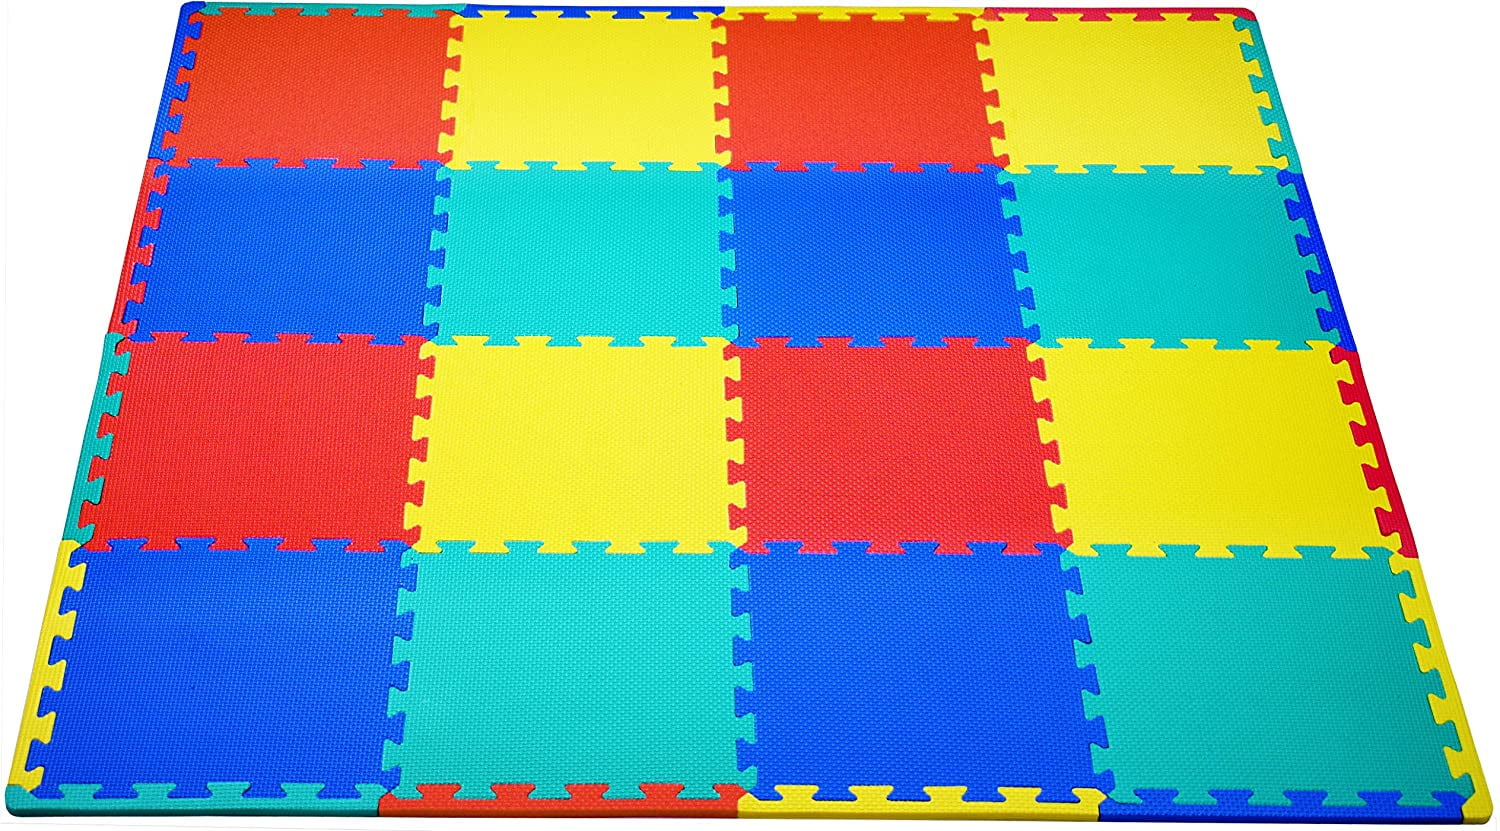 16 SQ FT Interlocking EVA Soft Foam Exercise Floor Mats Play Area Multicoloured 